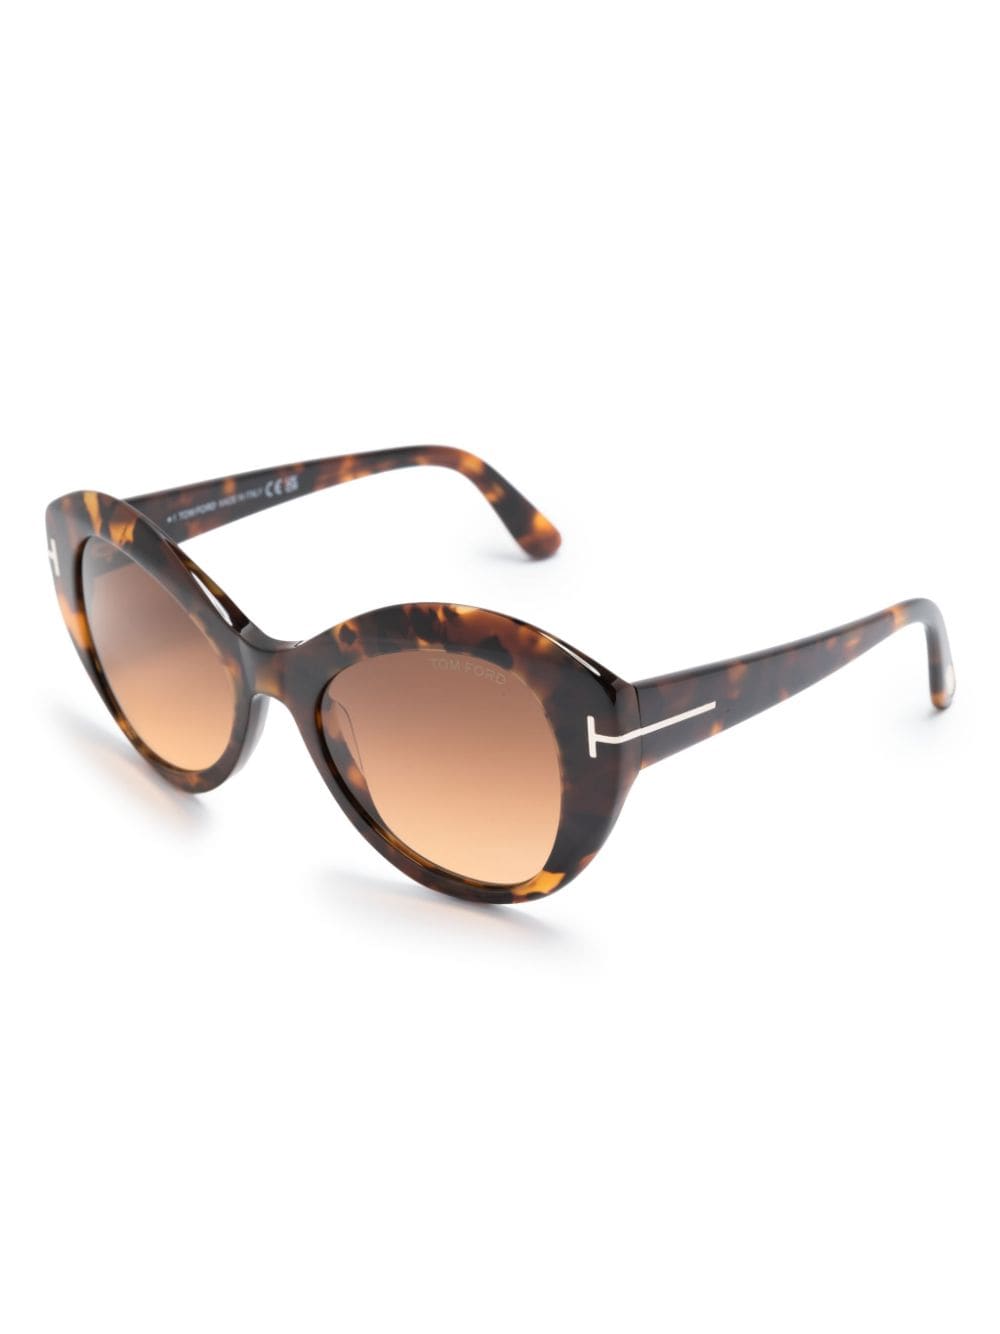 TOM FORD Eyewear tortoiseshell effect oversized sunglasses - Bruin